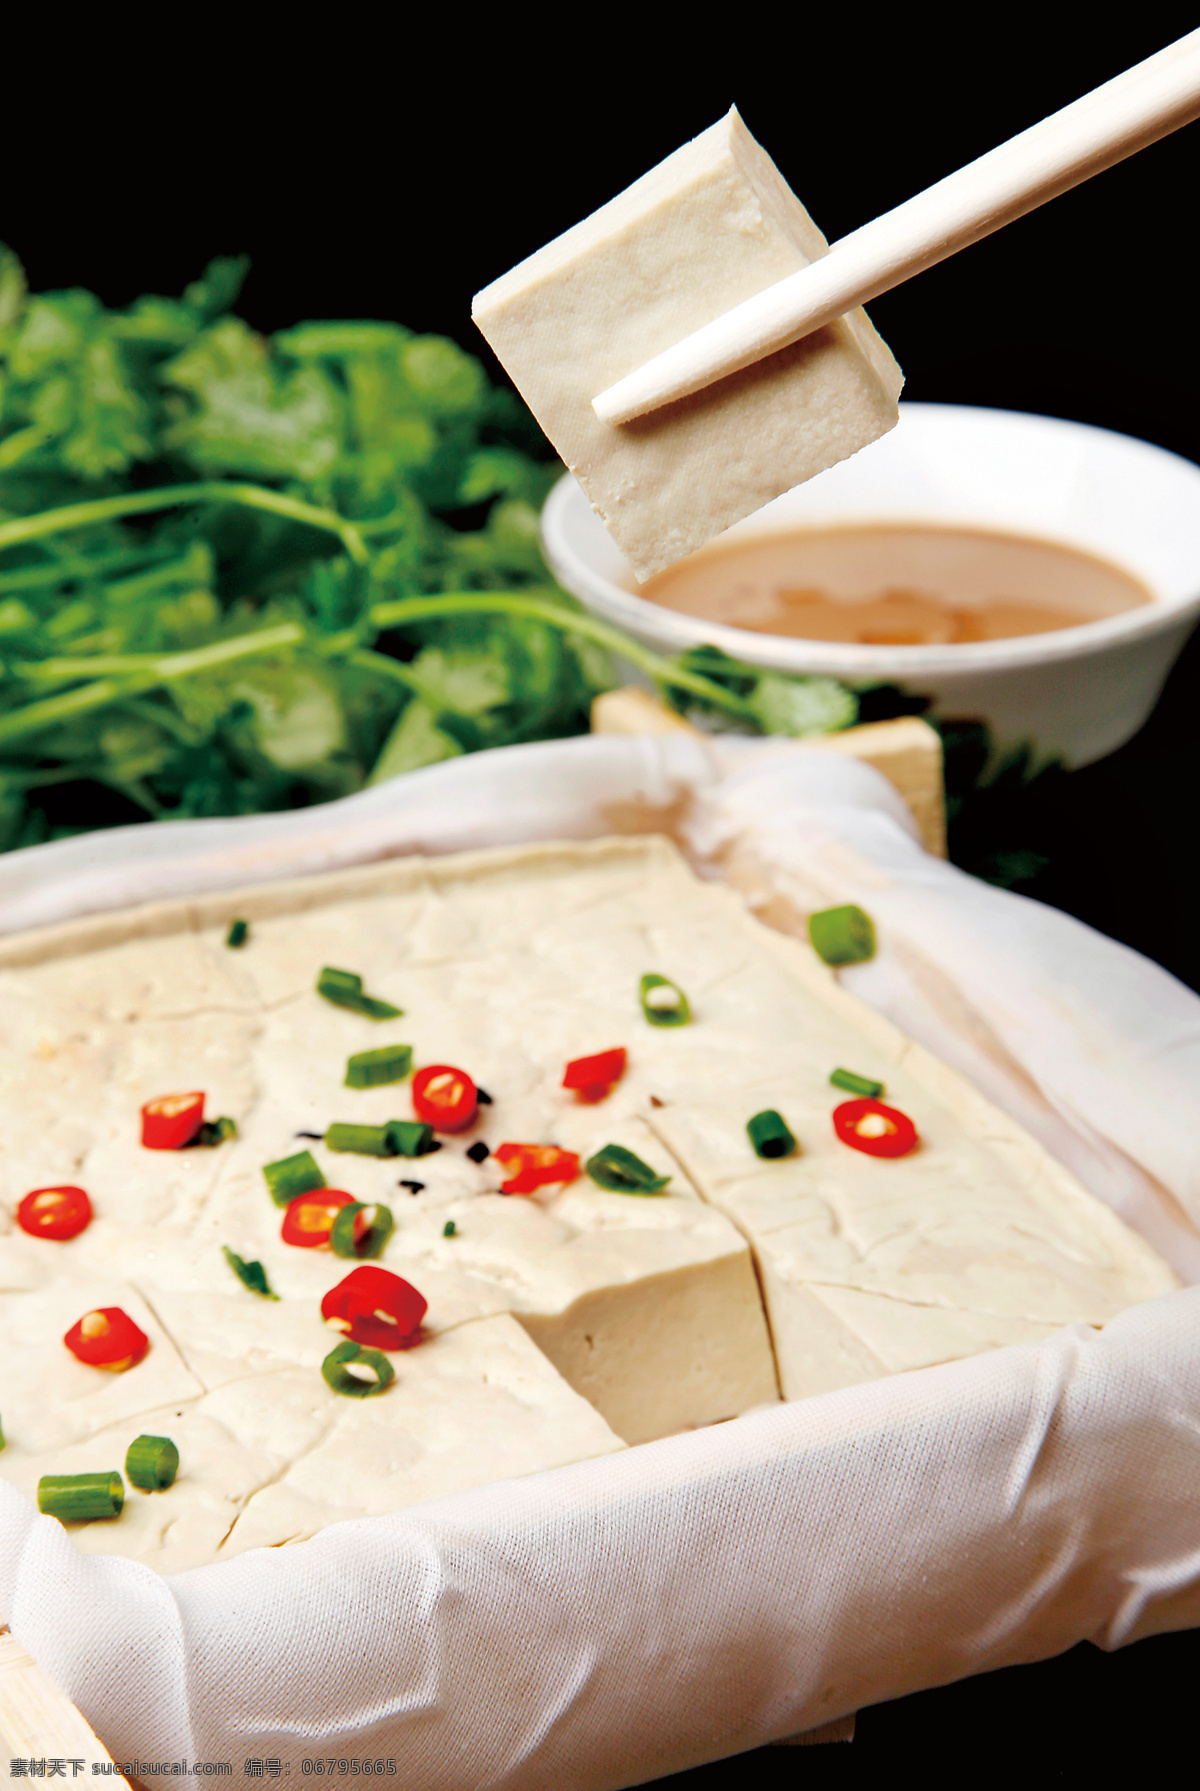 石磨老豆腐 美食 传统美食 餐饮美食 高清菜谱用图